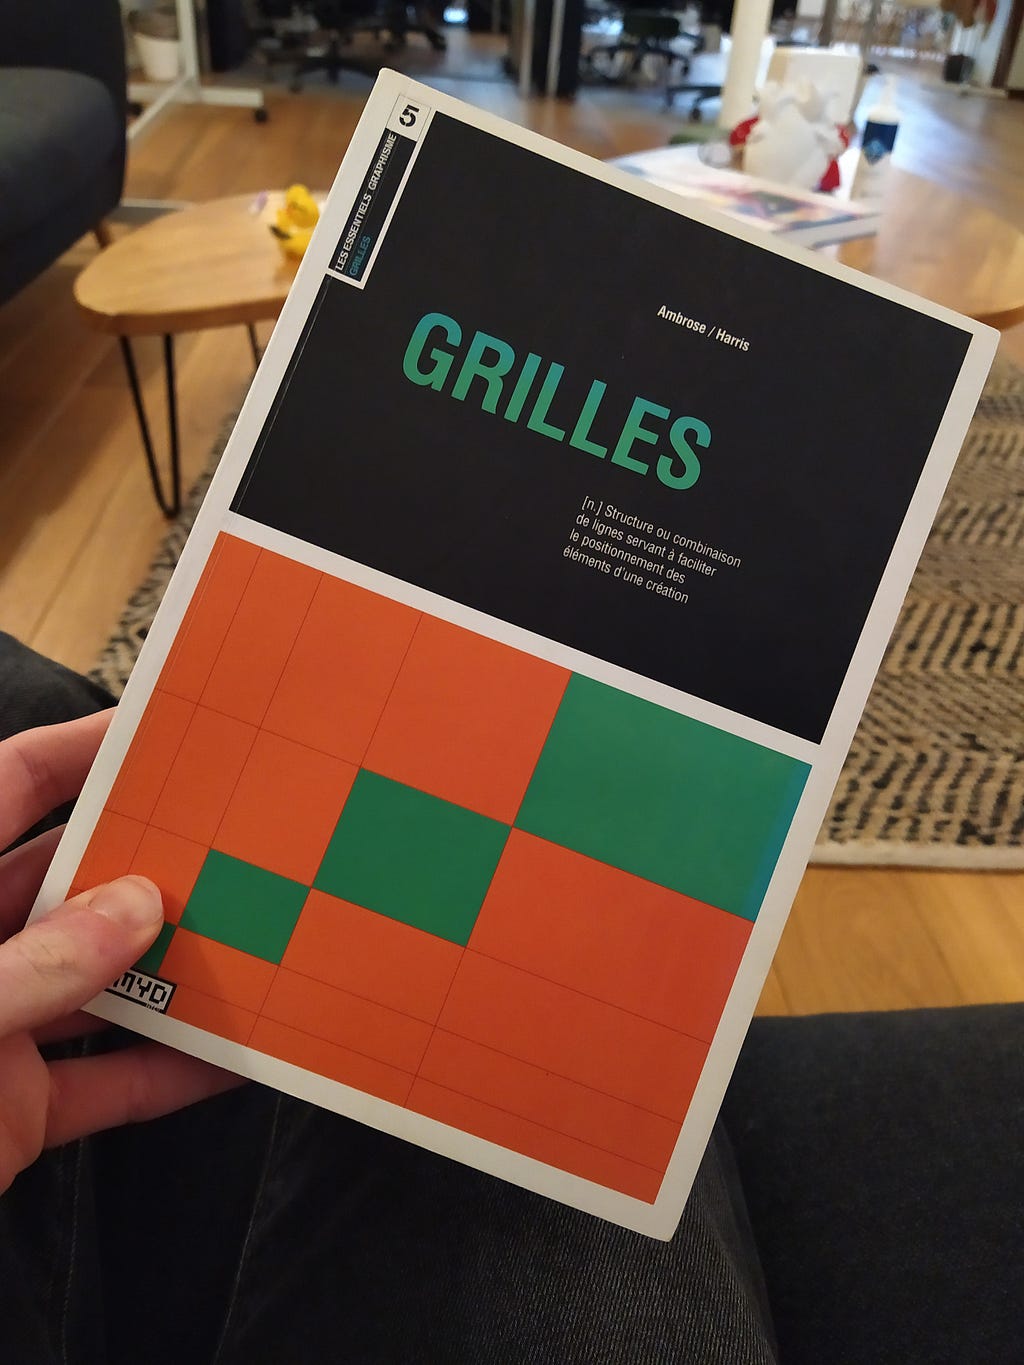 Le livre “Grilles”, d’Ambrose et Harris